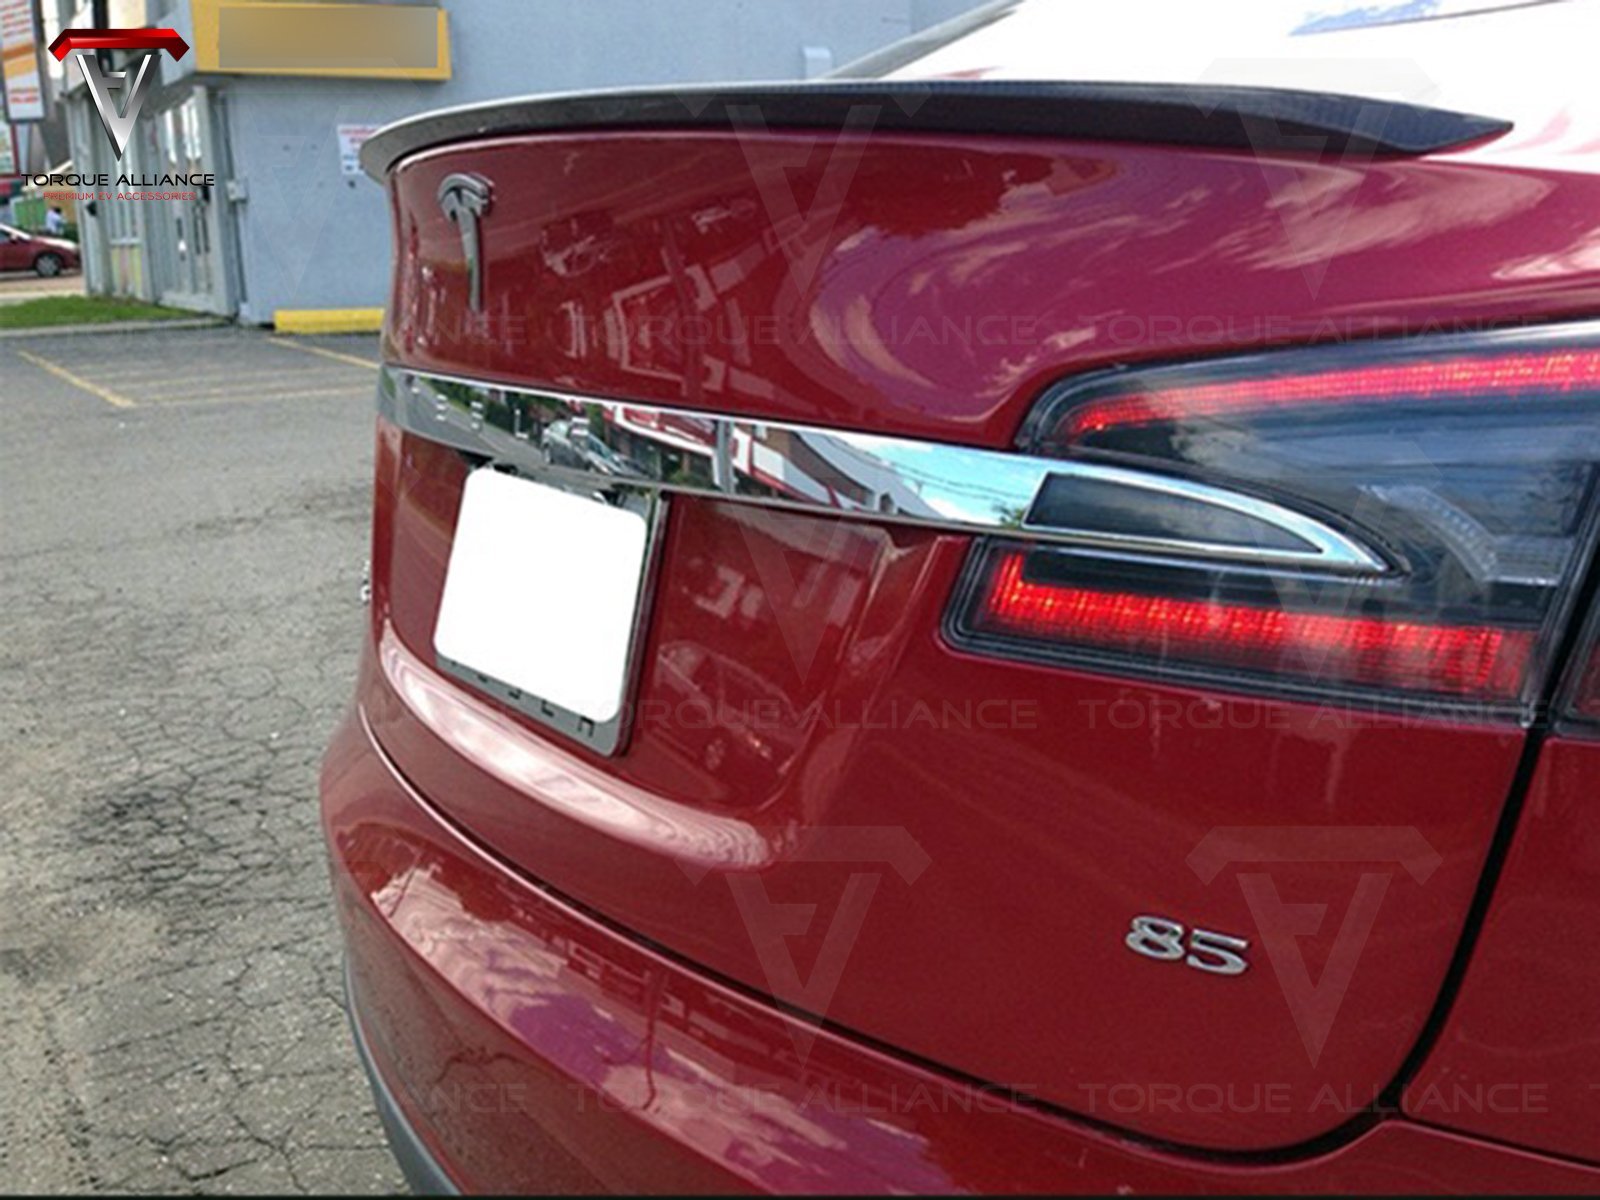 Model S: Echte Kohlefaser Heckspoiler - Torque Alliance